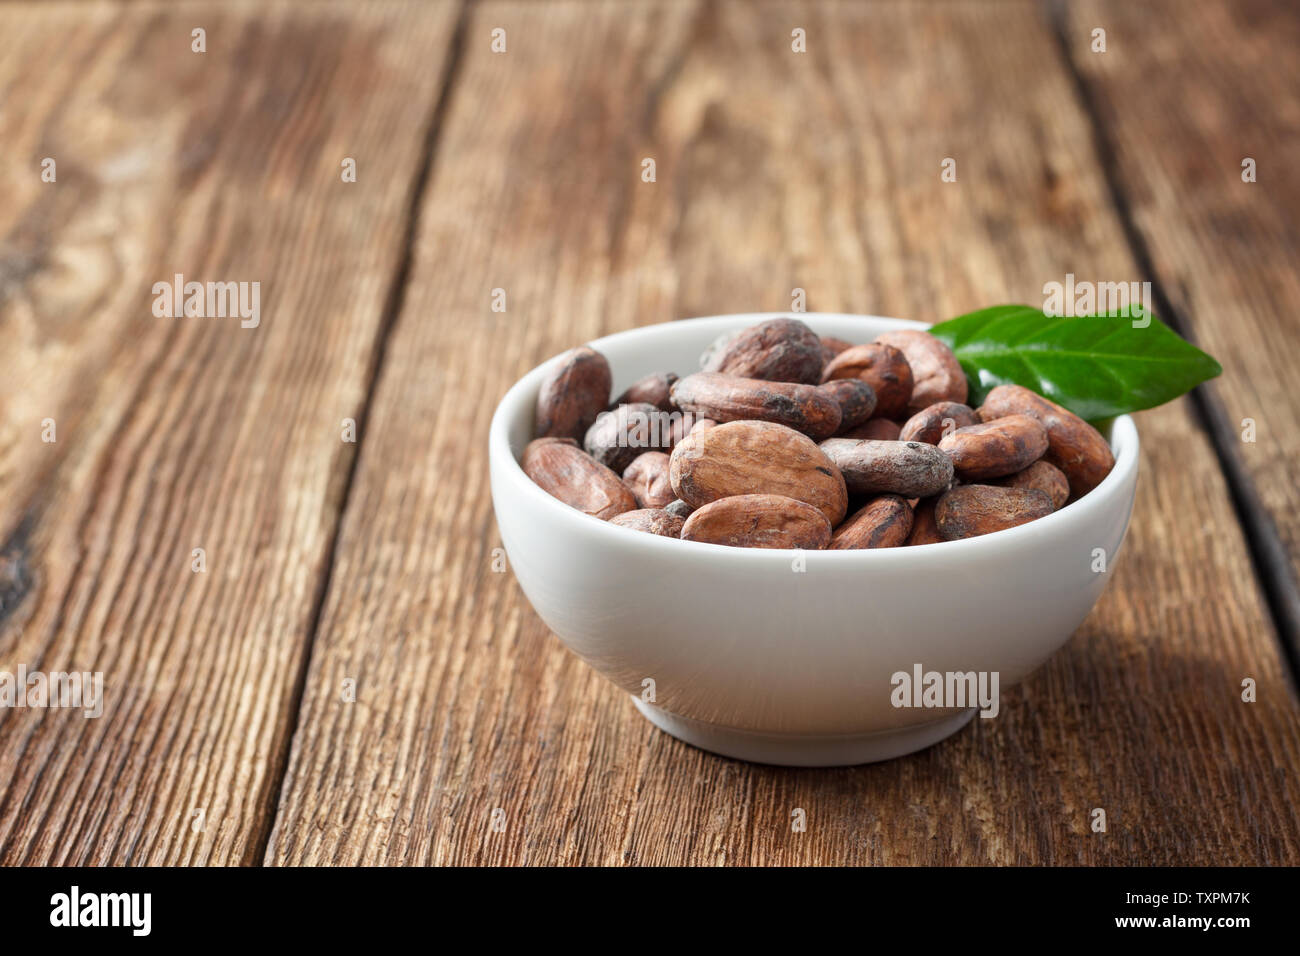 Les fèves de cacao dans un bol blanc sur une table en bois Photo Stock -  Alamy